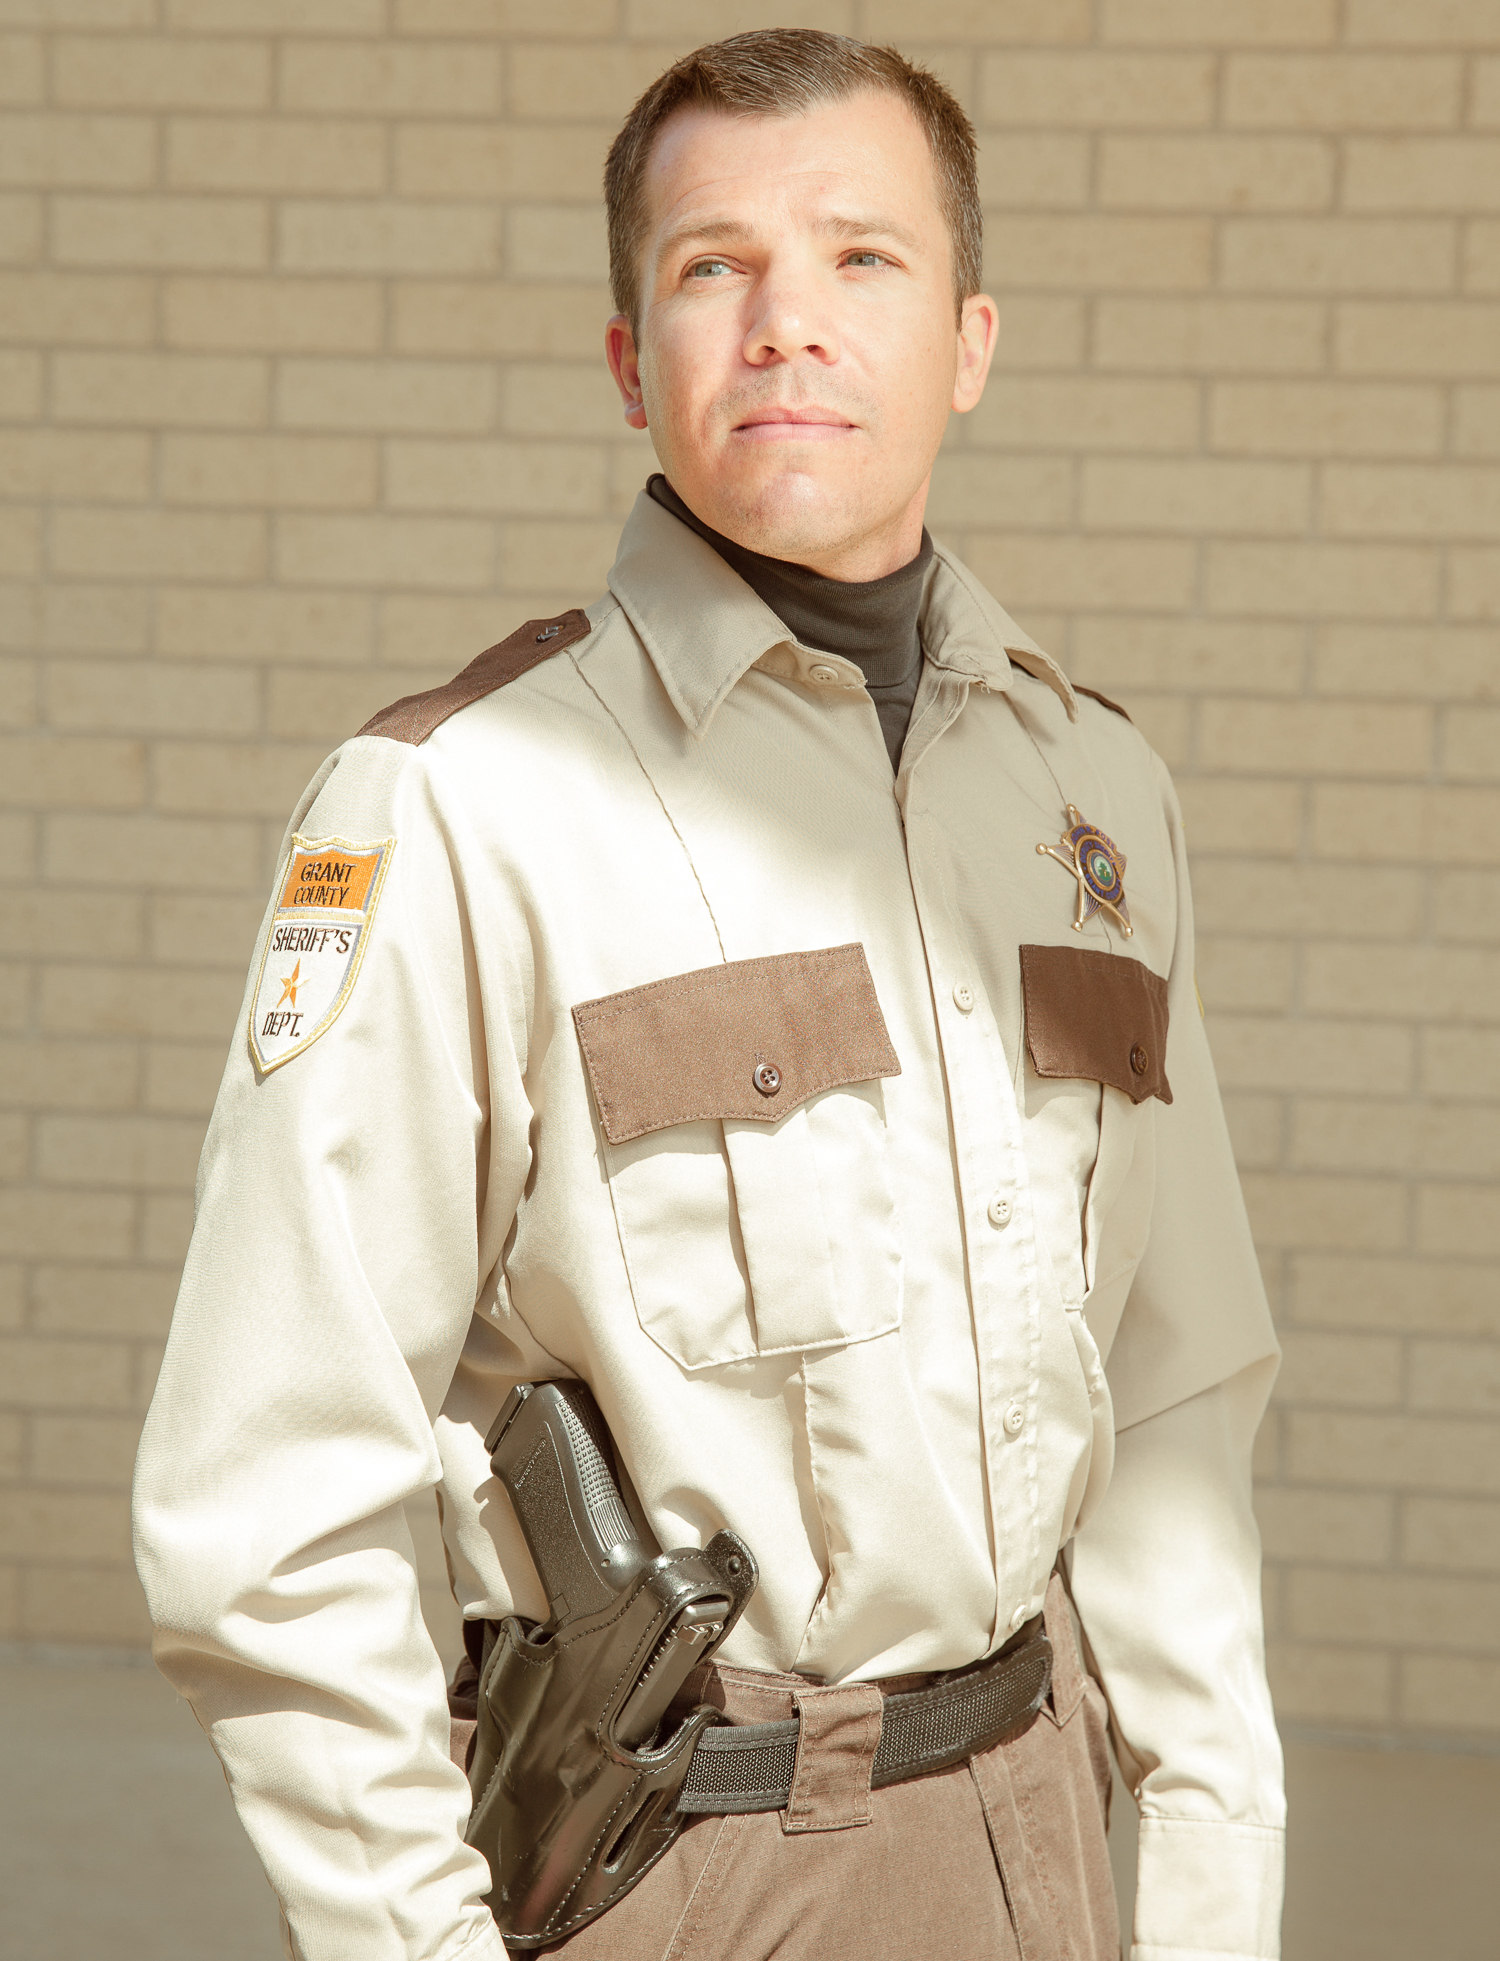 Deputy John Foss